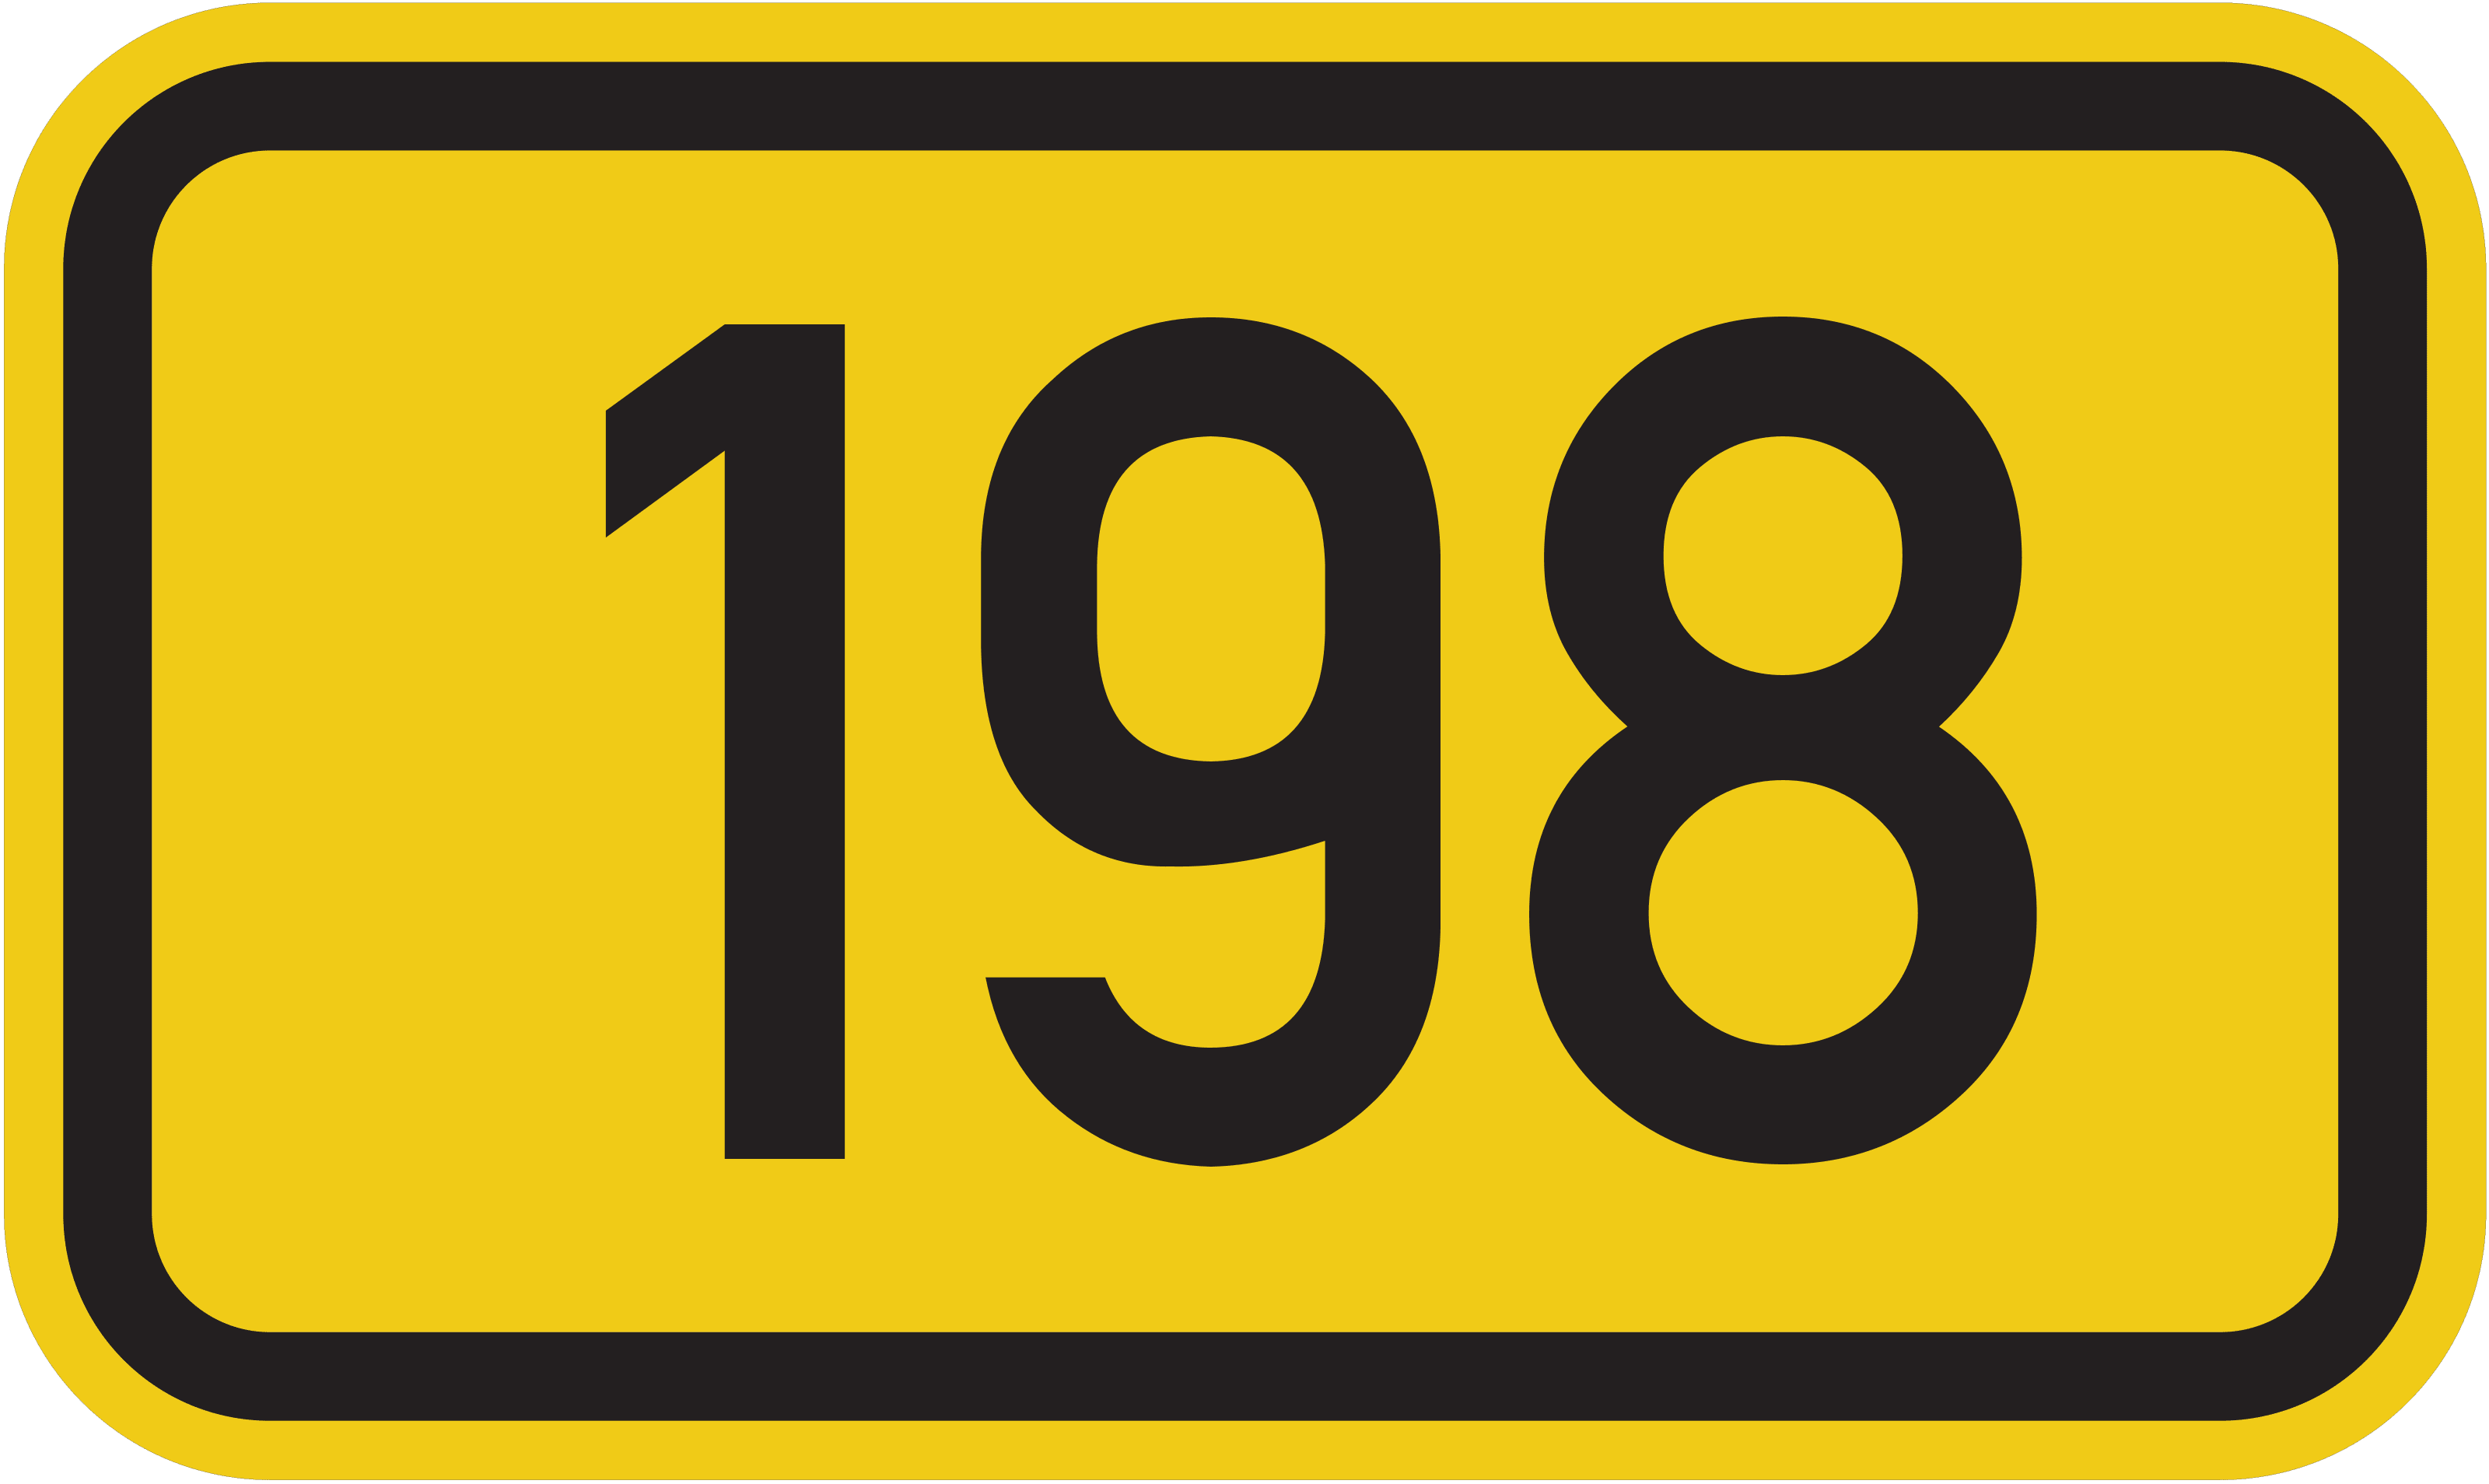 Bundesstraße 198